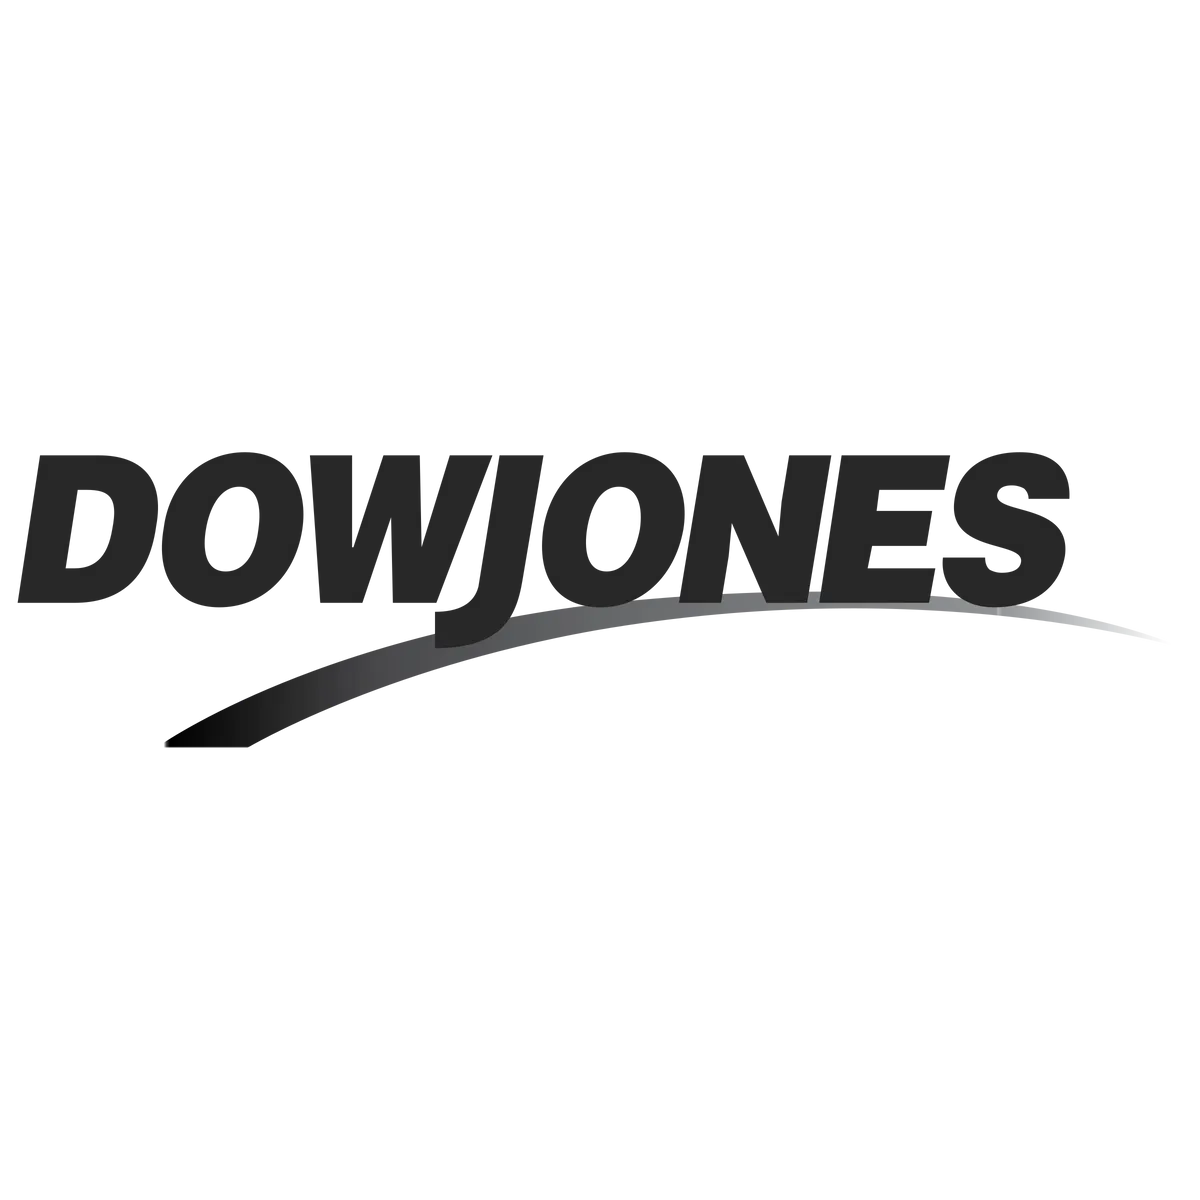 dow-jones-1-logo-png-transparent